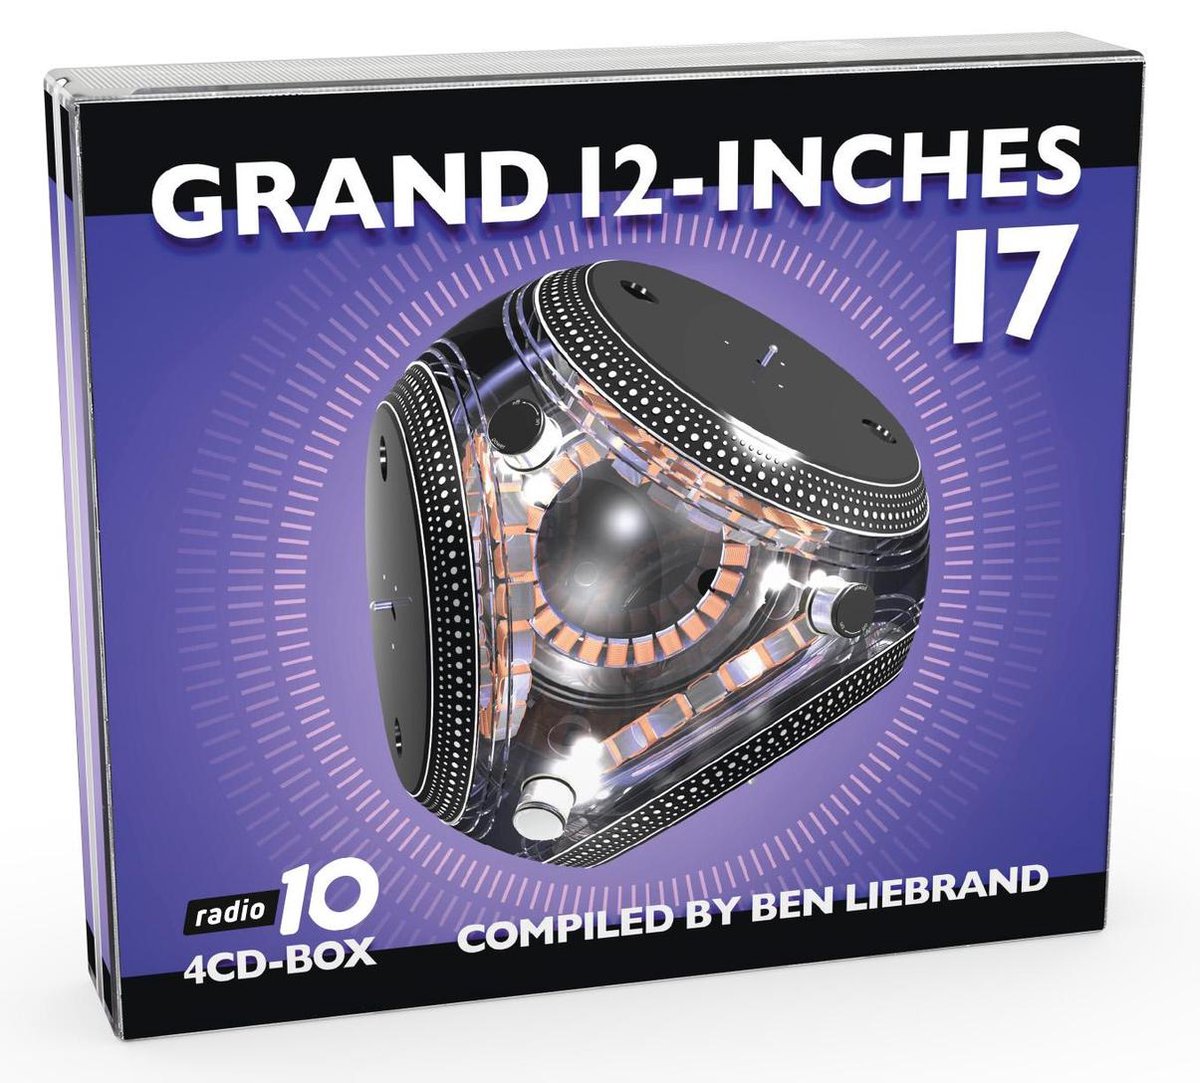 Grand 12 Inches 17 - LIEBRAND, BEN